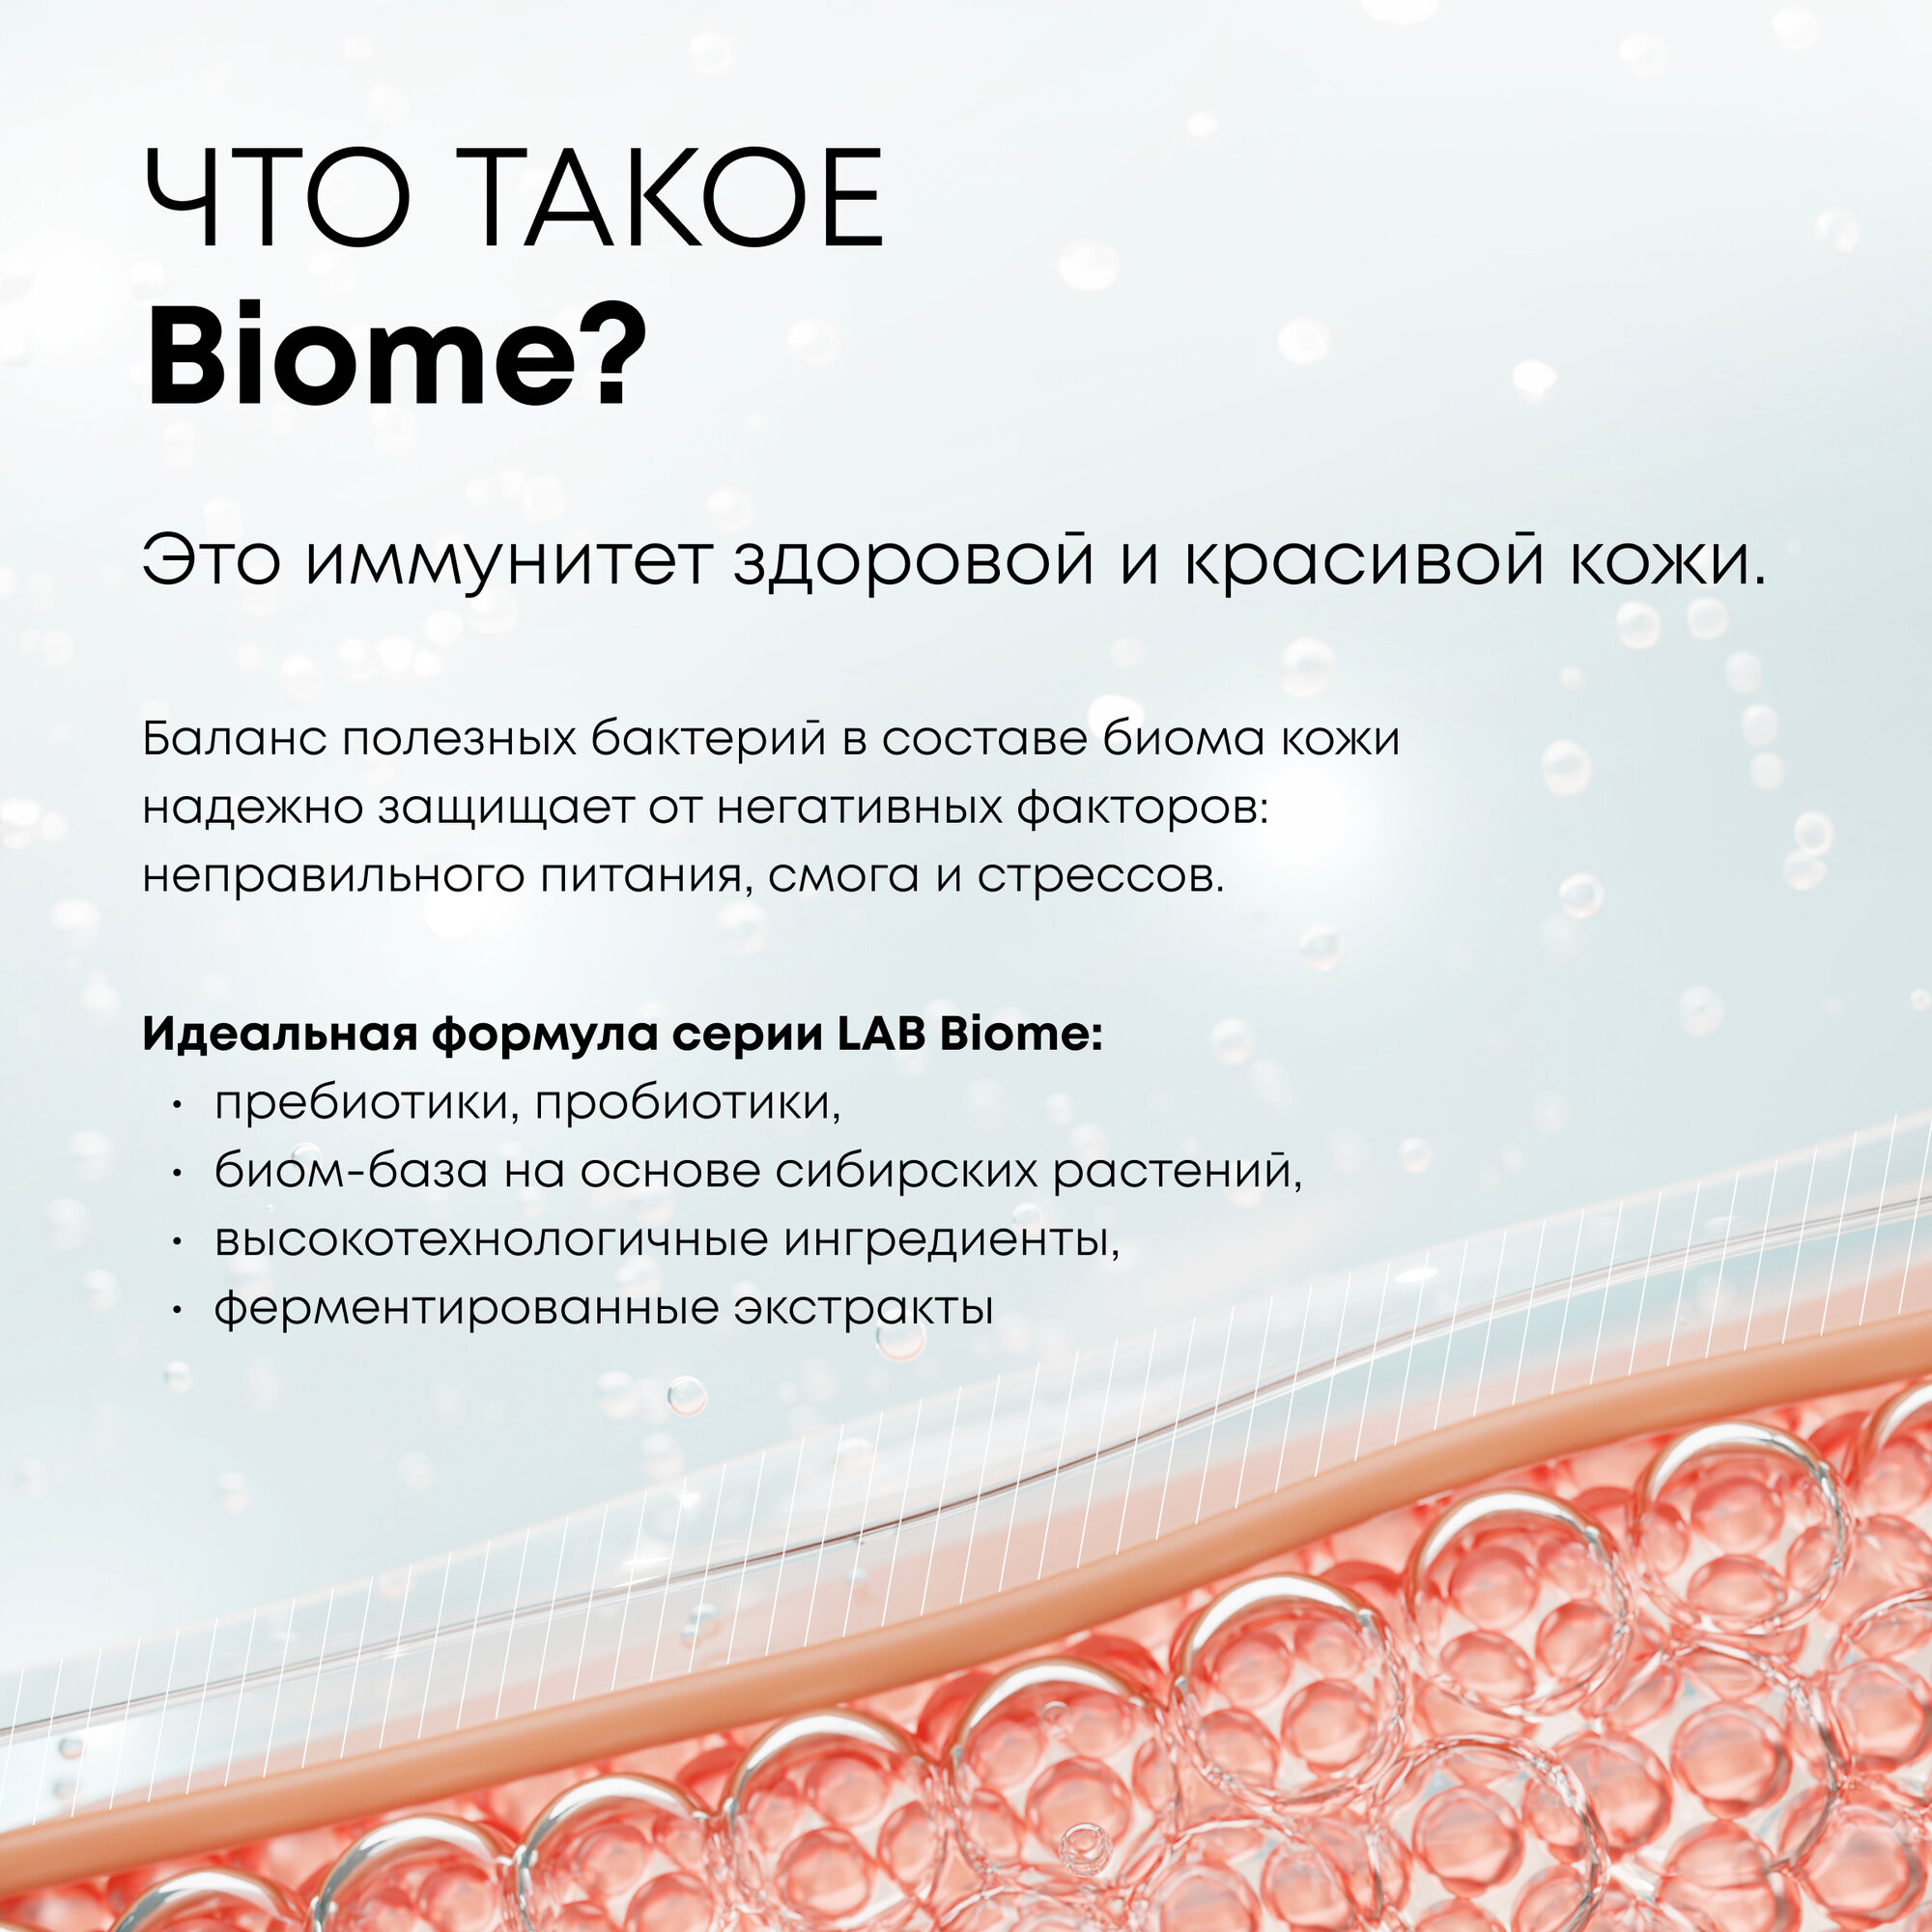 Гиалуроновые пилинг-диски Natura Siberica Lab Biome Hydration, пилинг пэды Лаб биом, 20 шт